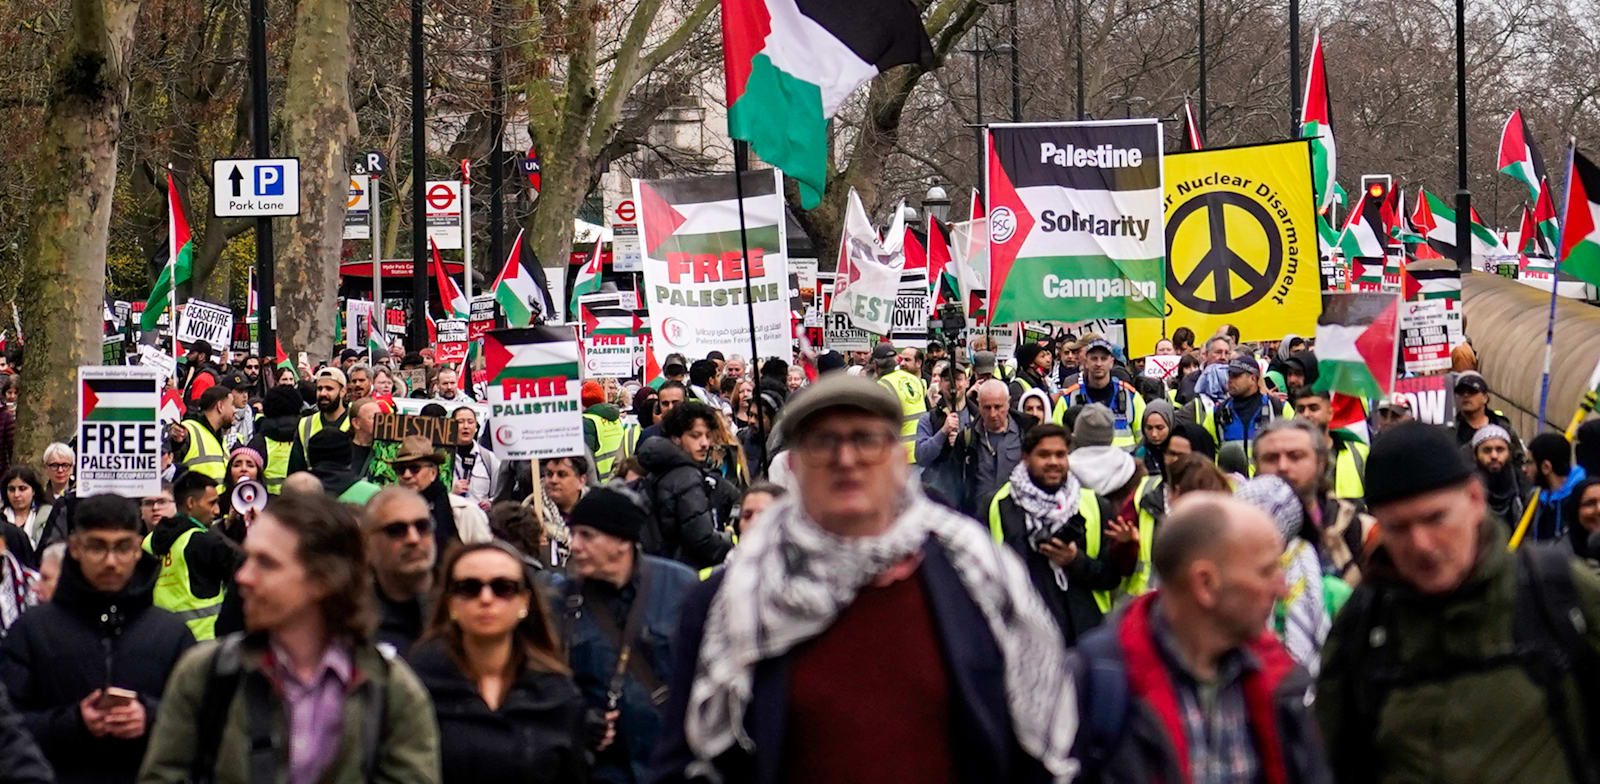 הפגנה פרו־פלסטינית בלונדון / צילום: ap, Alberto Pezzali